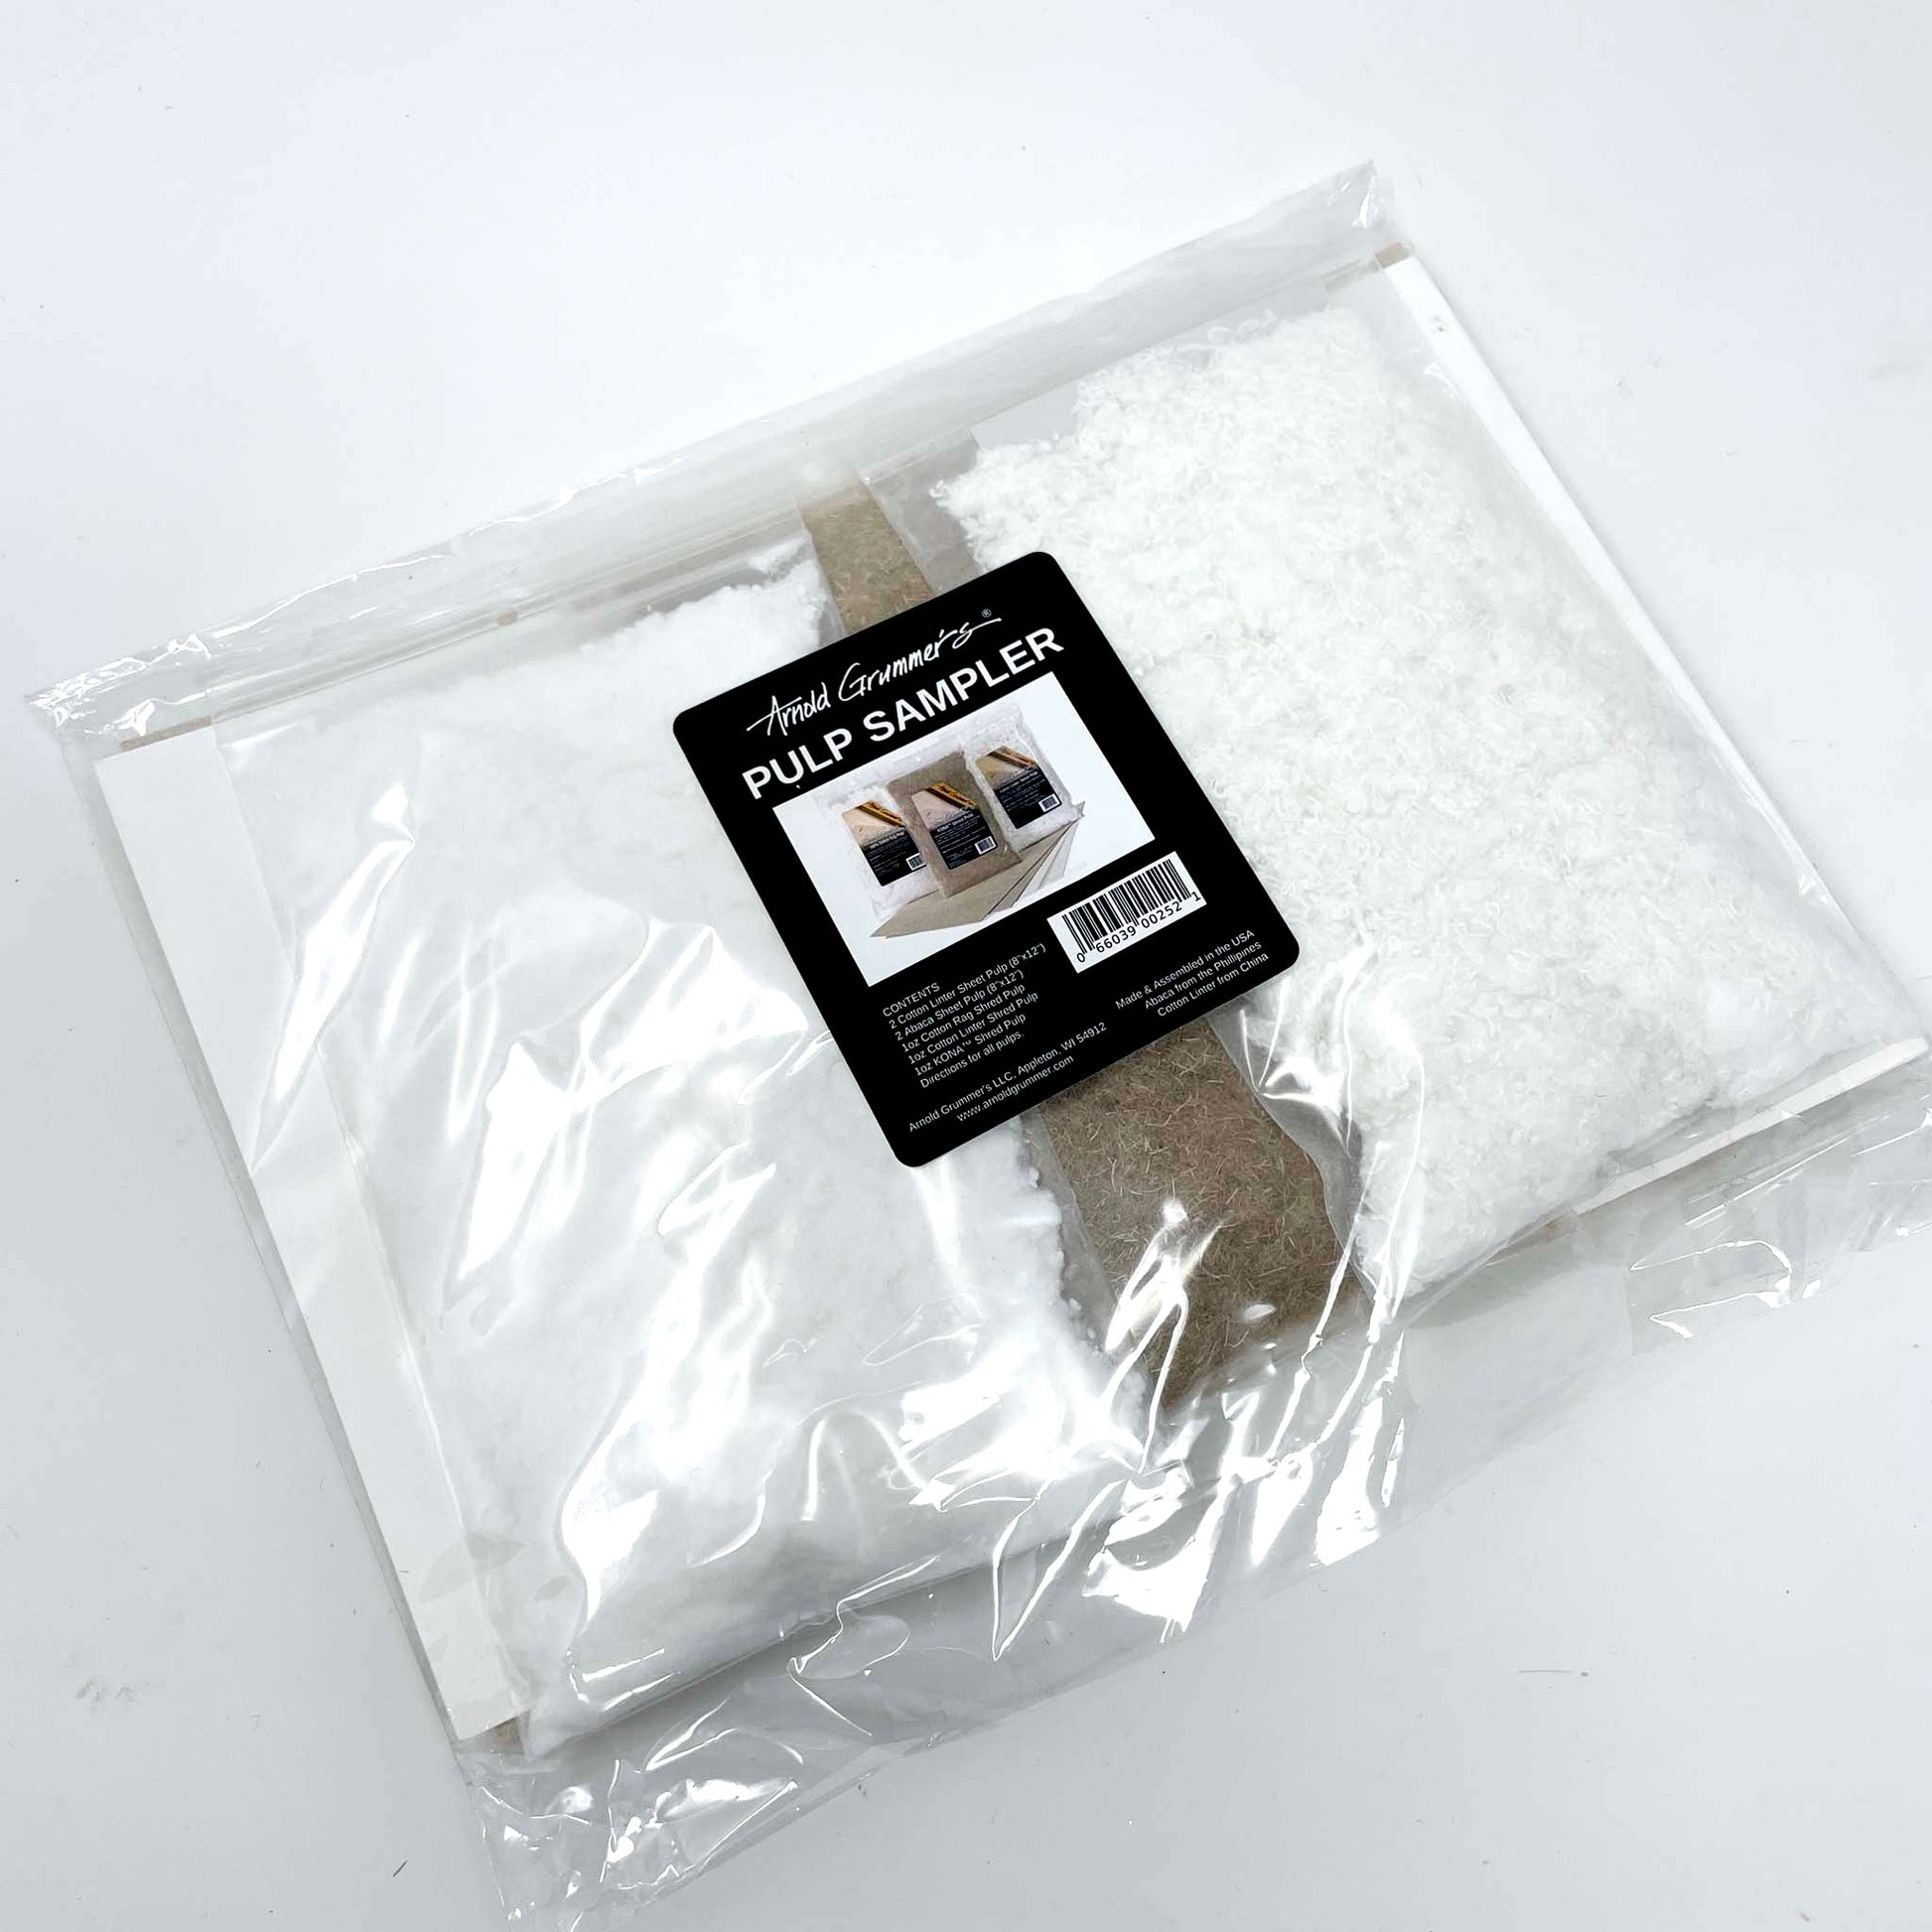 100% white cotton rag pulp